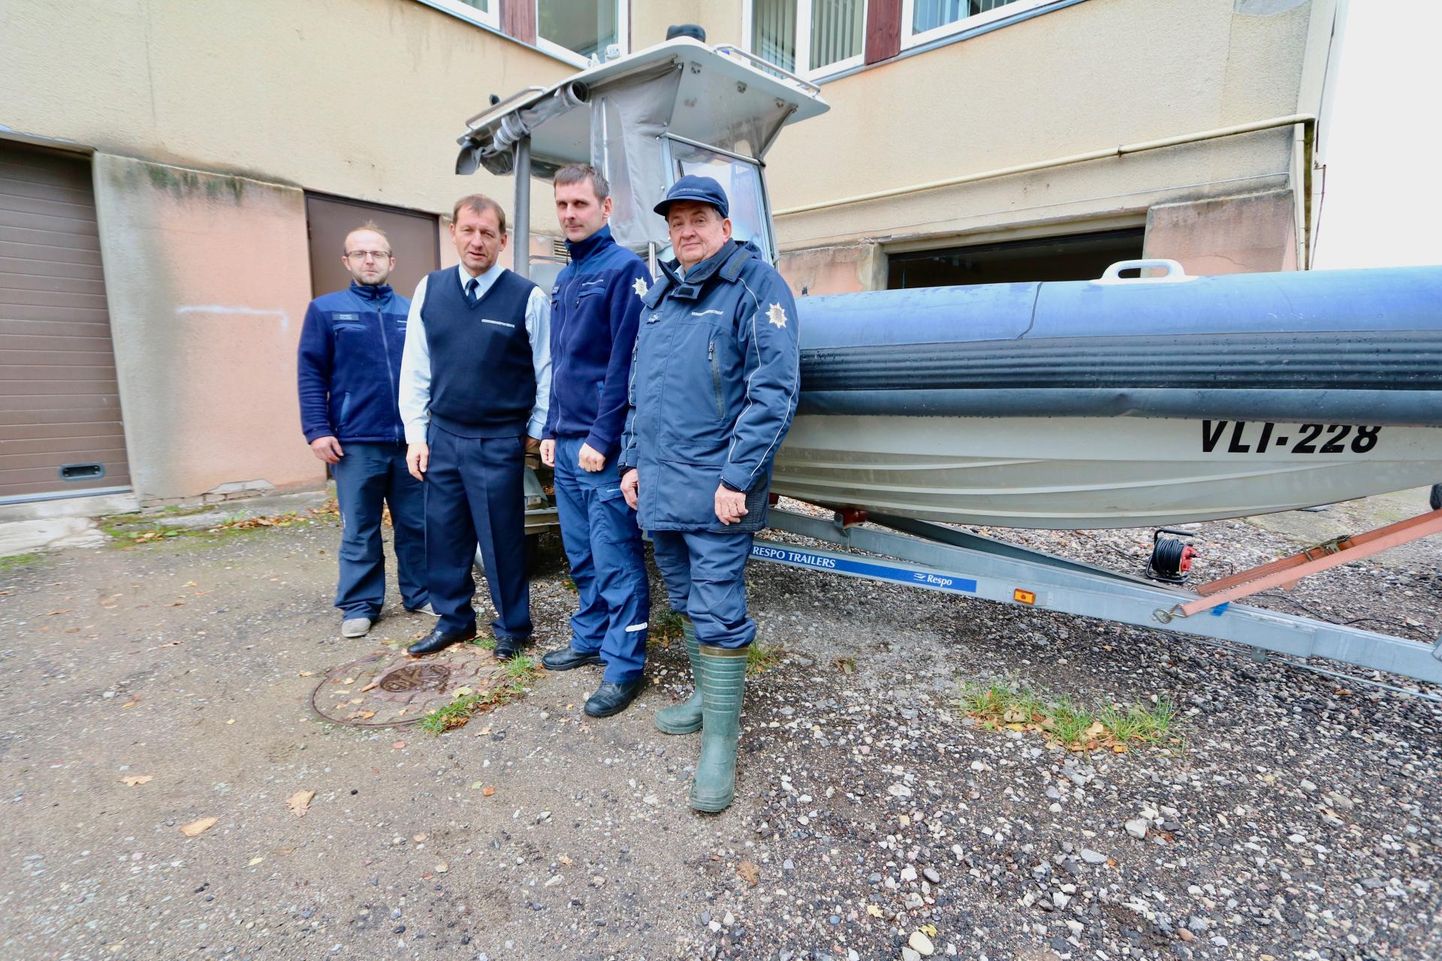 Põlva büroo keskkonnainspektsiooni ametnikud Romet Palmik (vasakult), Toomas Rebane, Heikki Hioväin ja Mati Kanarik.